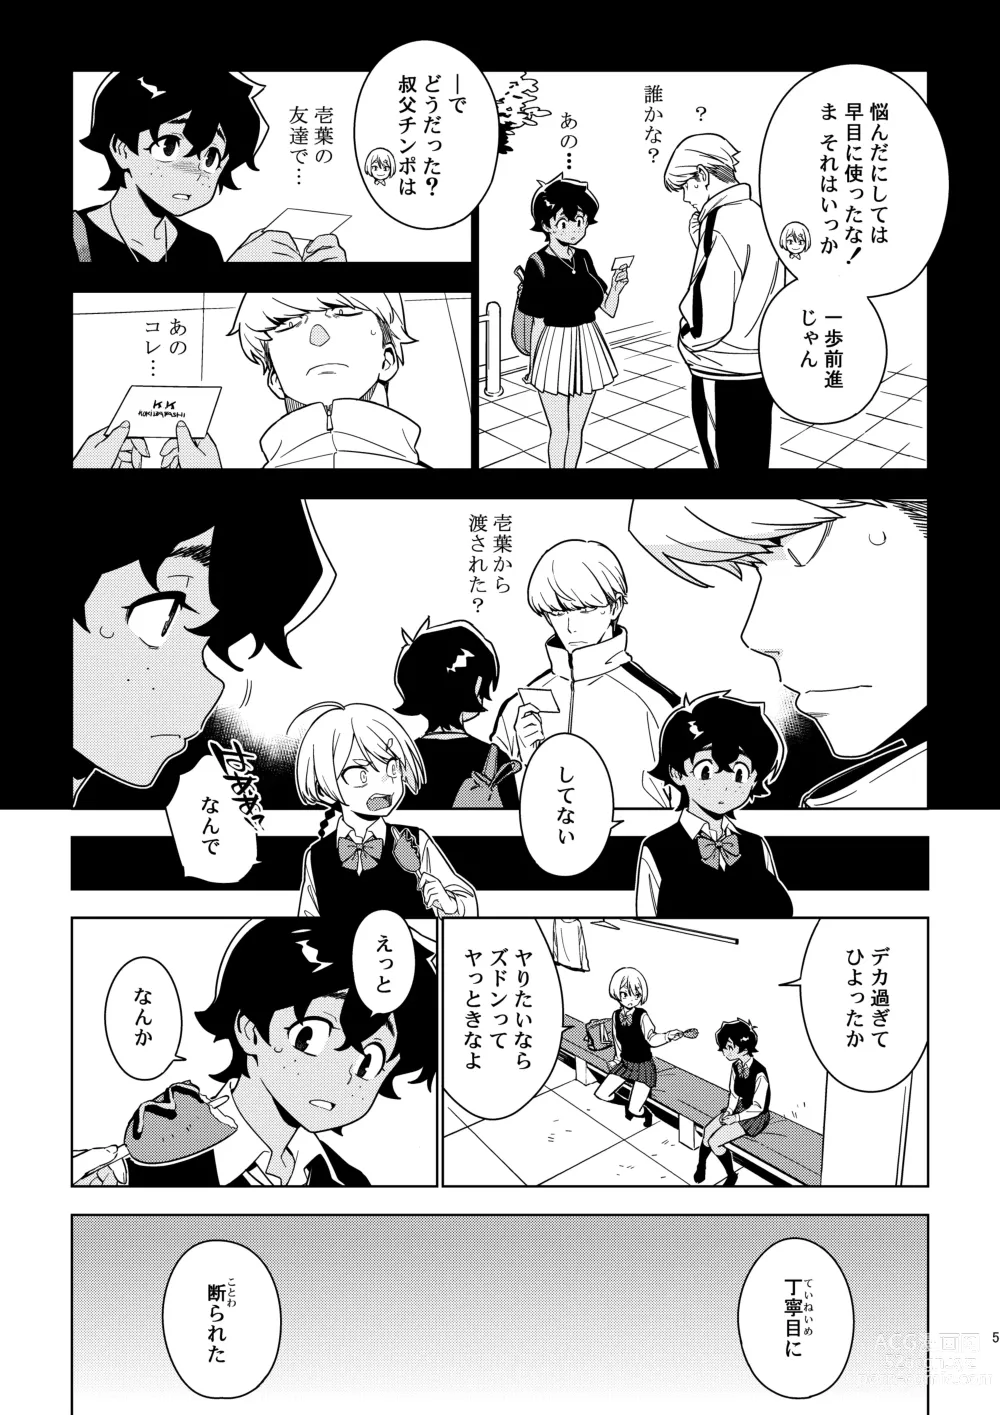 Page 4 of doujinshi Seiko